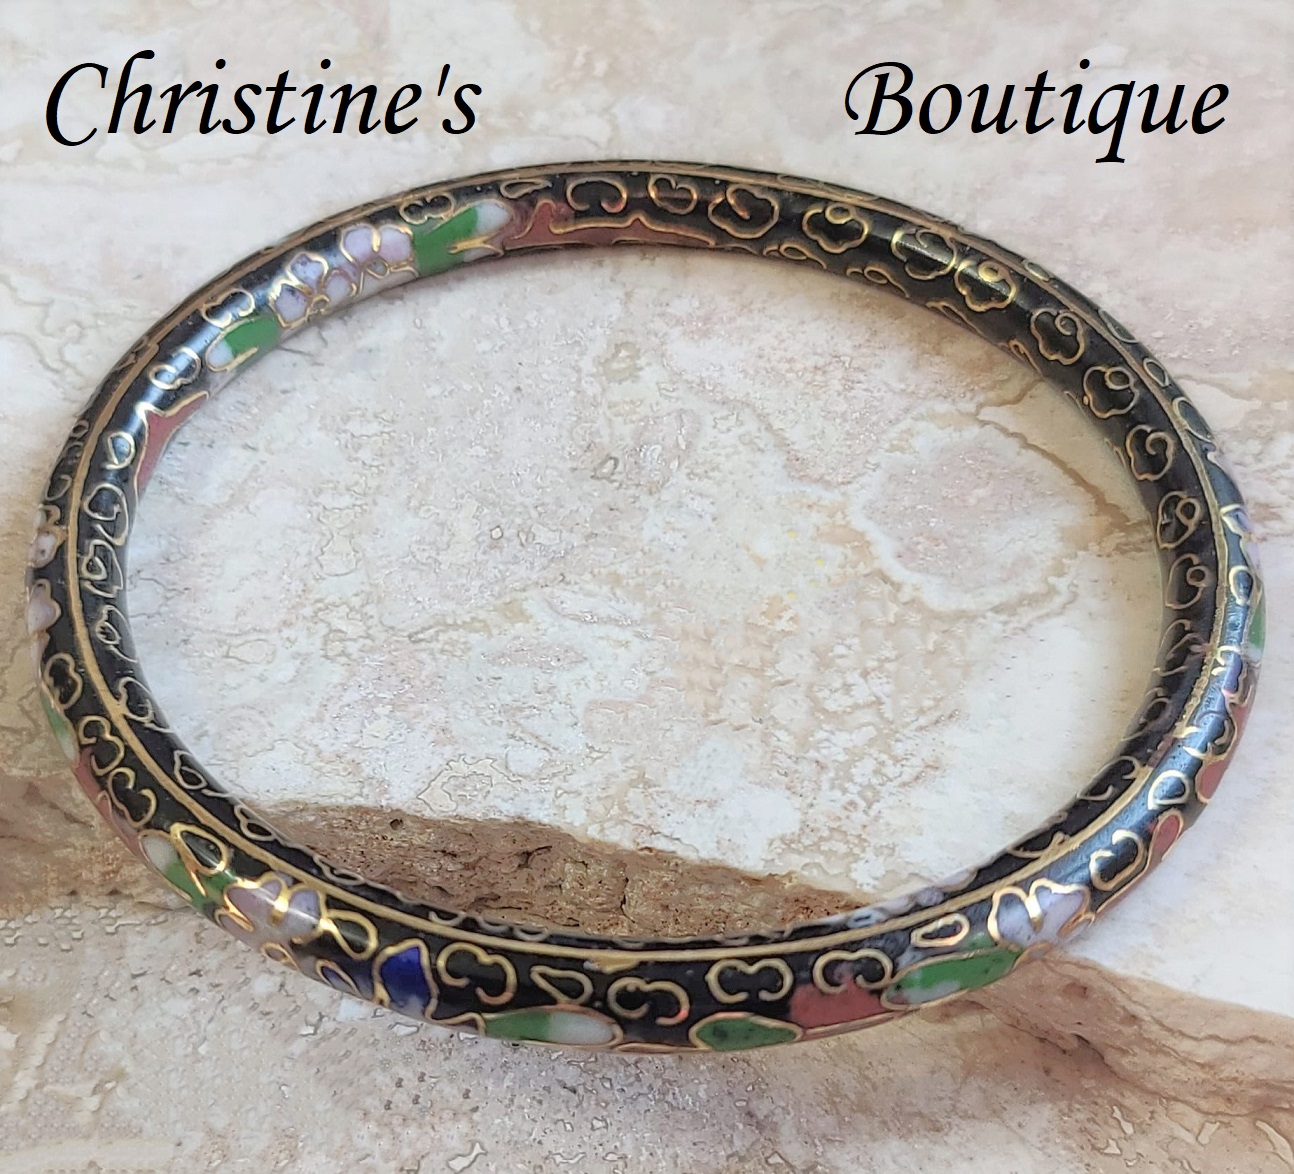 Cloisonne bangle bracelet, vintage bracelet with dark pink and green hues